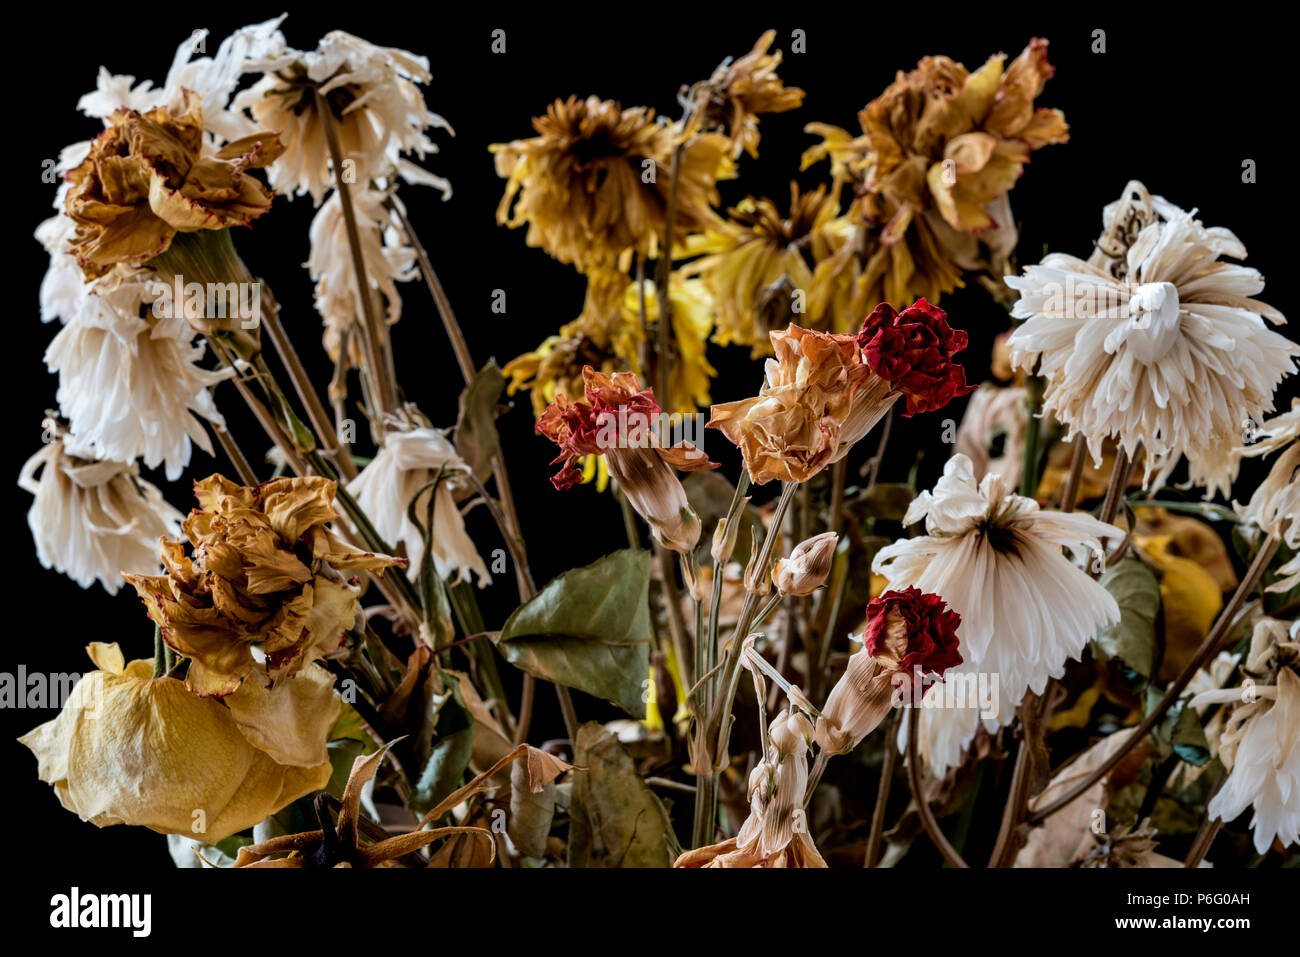 Vase von toten und verwesenden Blumen. Die Gefühle der Einsamkeit, Trauer, Depression und Verlust des Lebens. Stockfoto